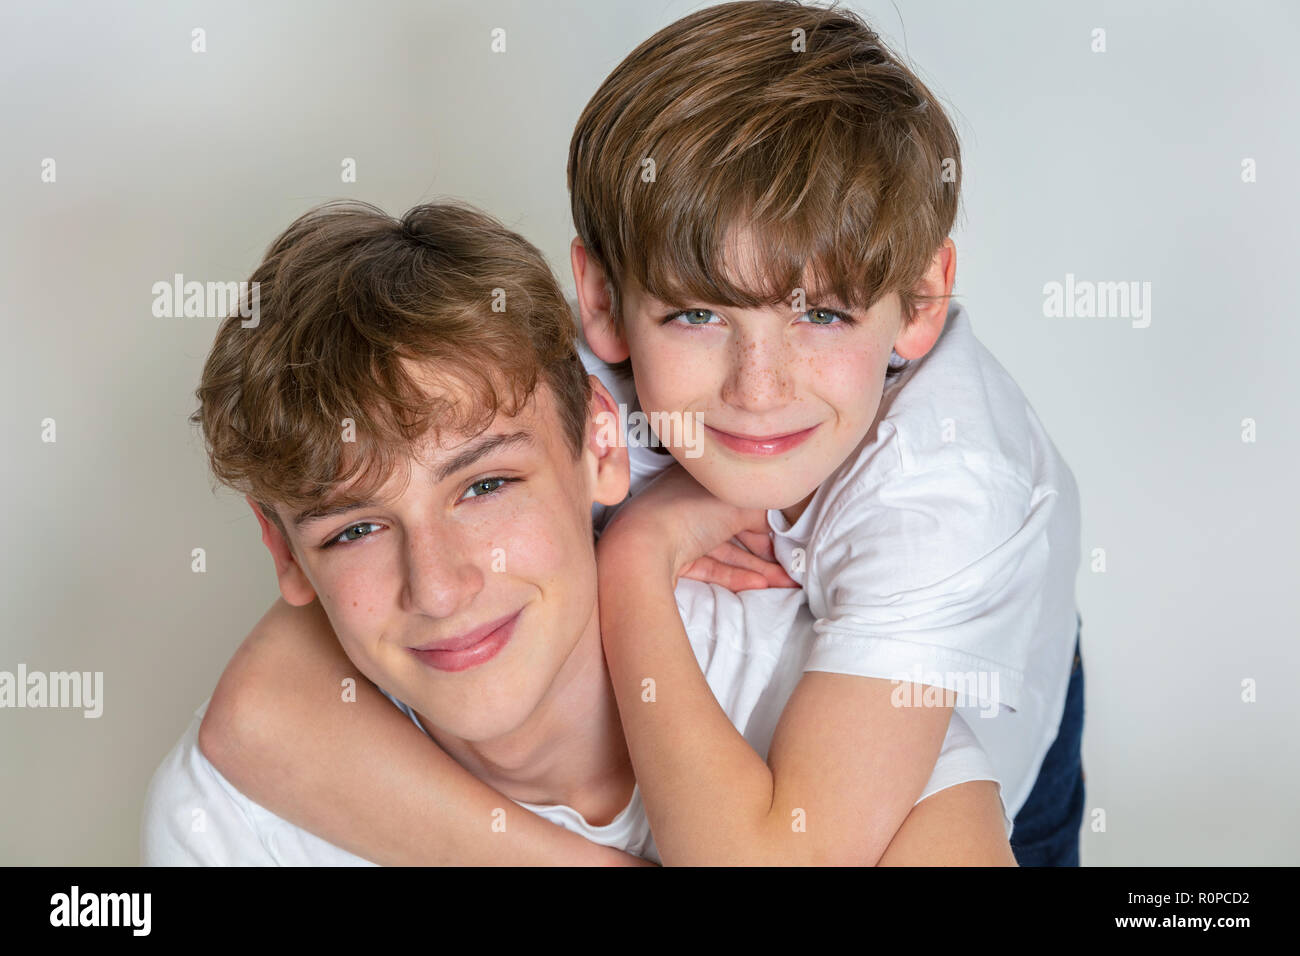 Fond blanc photographie de jeunes enfants garçon heureux frères smiling together Banque D'Images